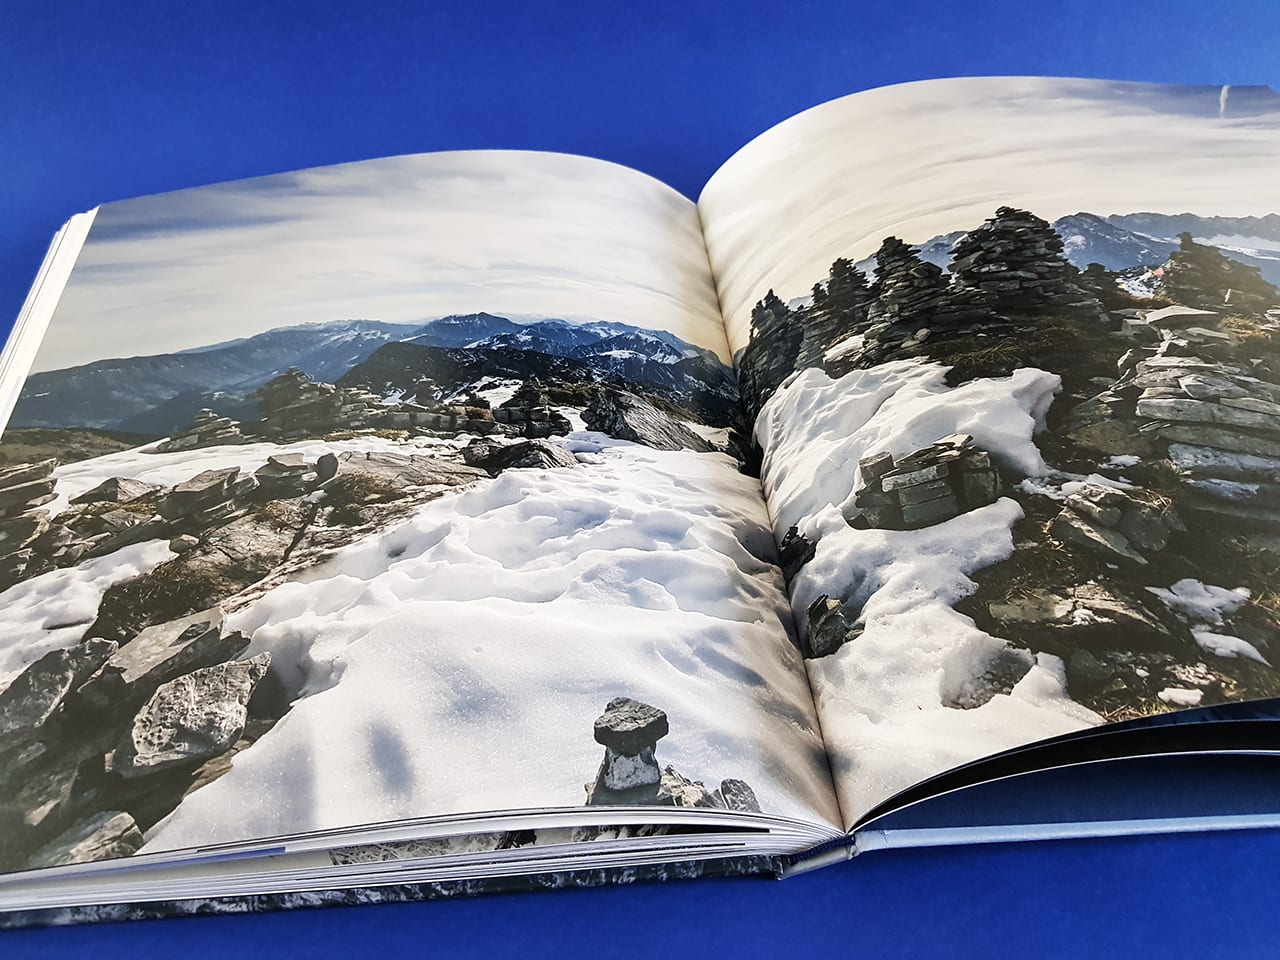 Ocean of Clouds Alpine Fluchten Sieveking Verlag Doppelseite Innenansicht